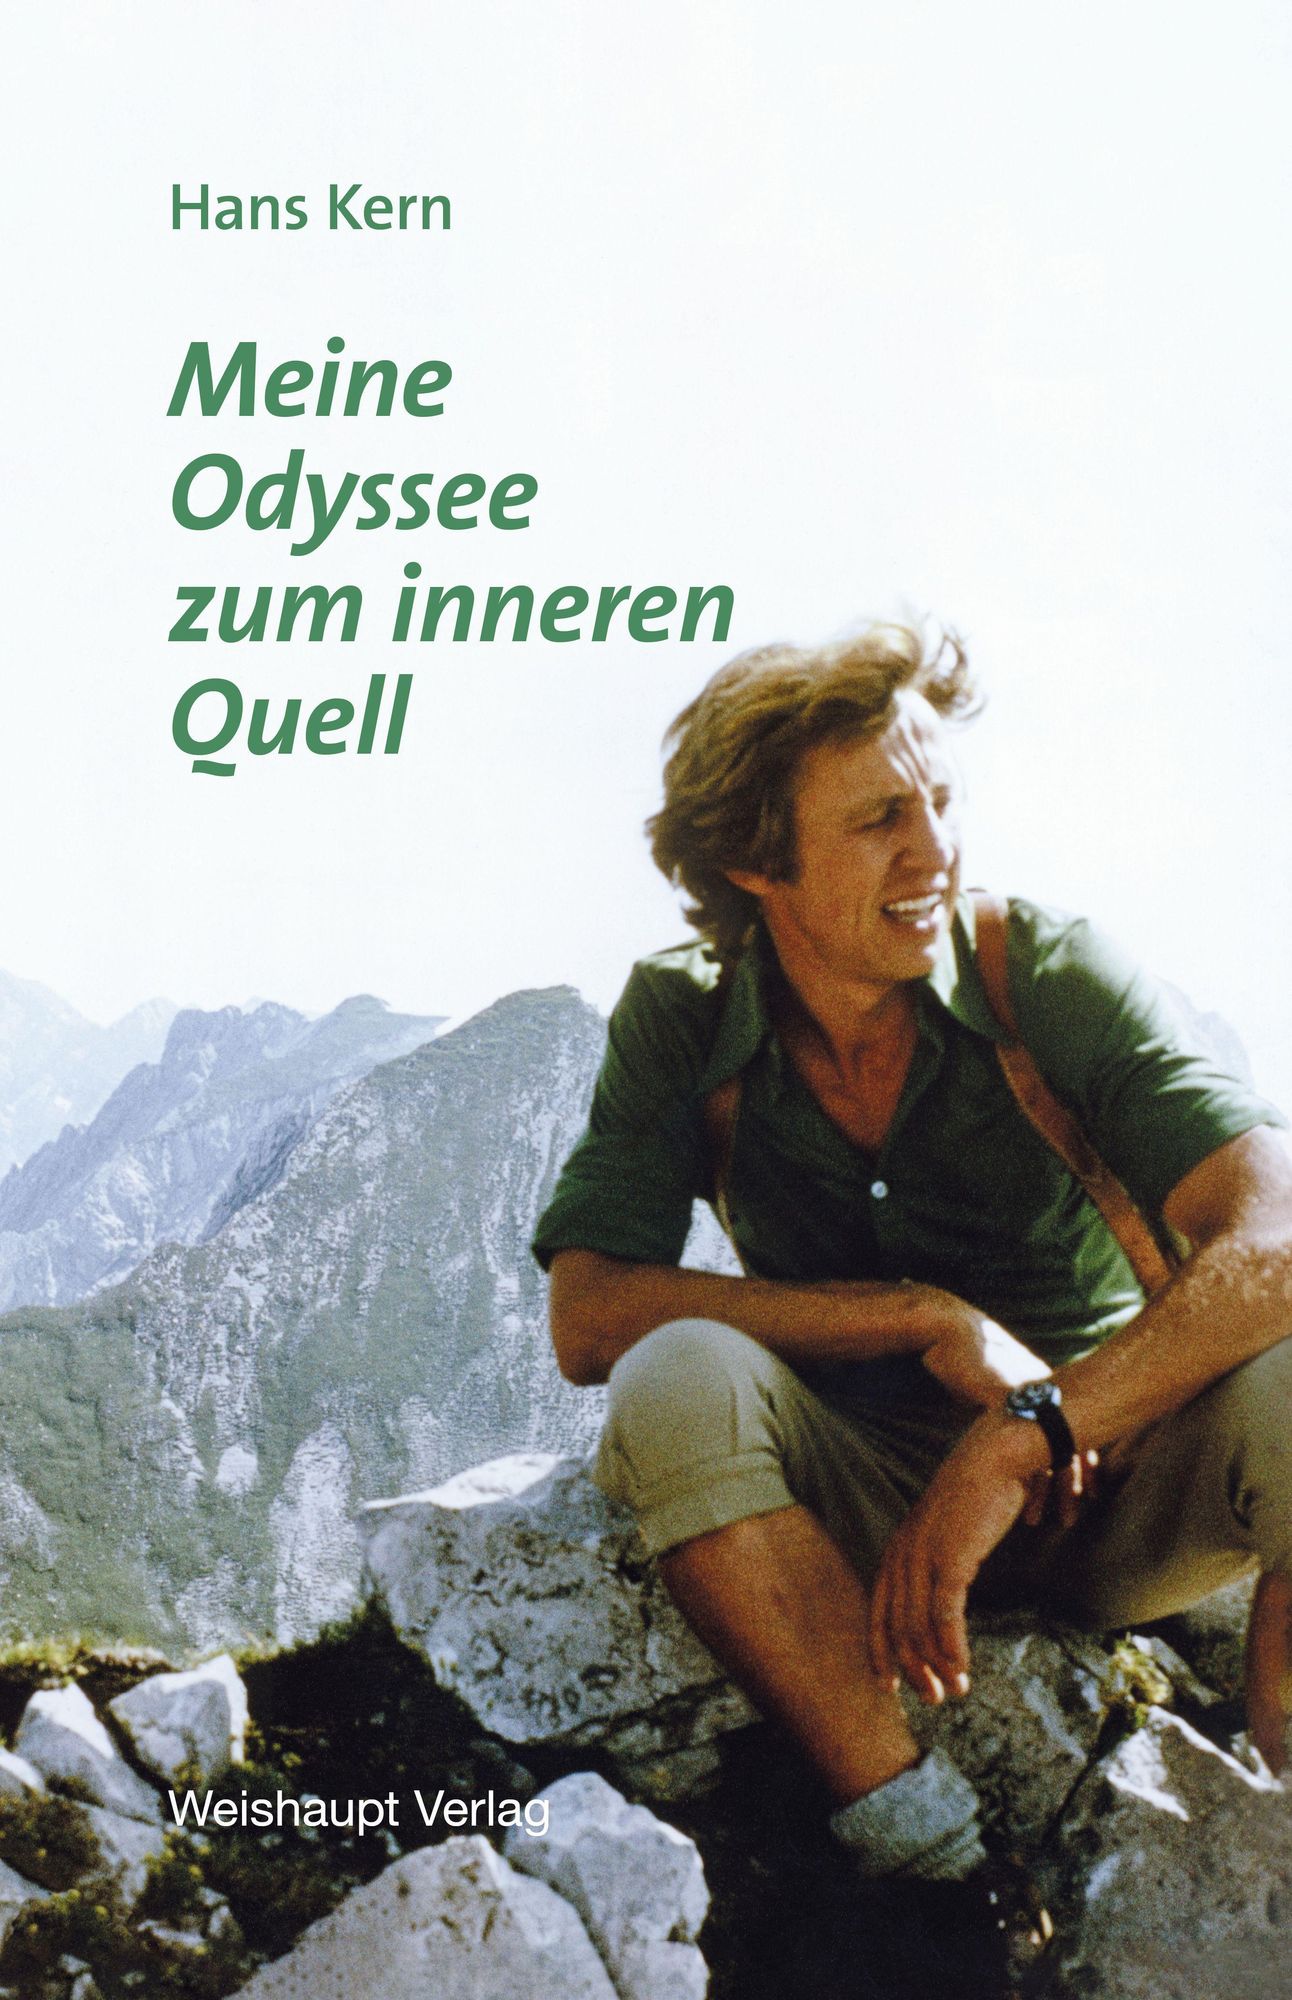 Meine Odyssee zum inneren Quell' von 'Hans Kern' - Buch -  '978-3-7059-0545-0'